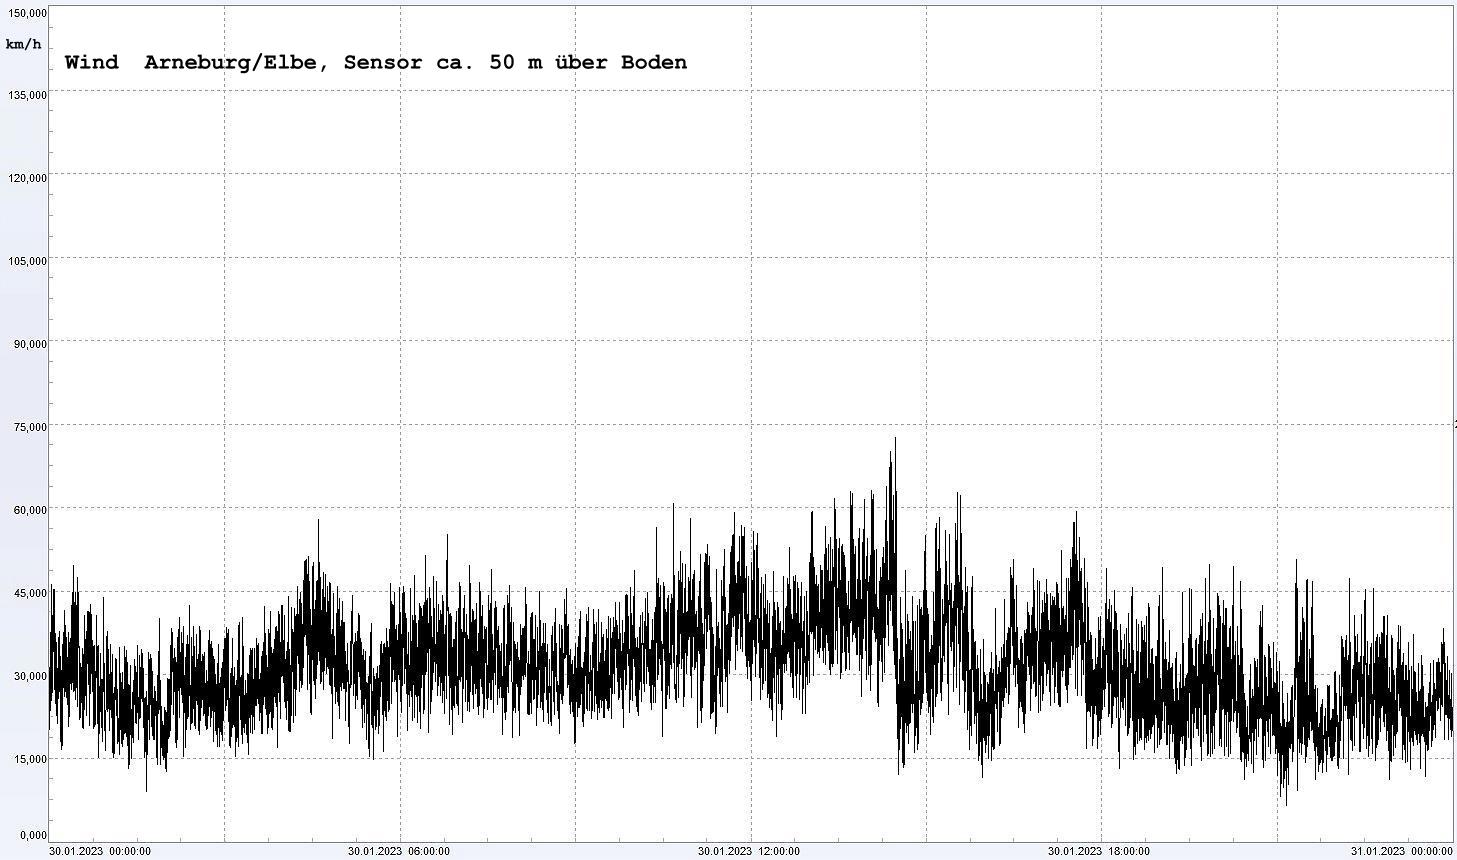 Arneburg Winddaten 30.01.2023, 
  Sensor auf Gebude, ca. 50 m ber Erdboden, 5s-Aufzeichnung